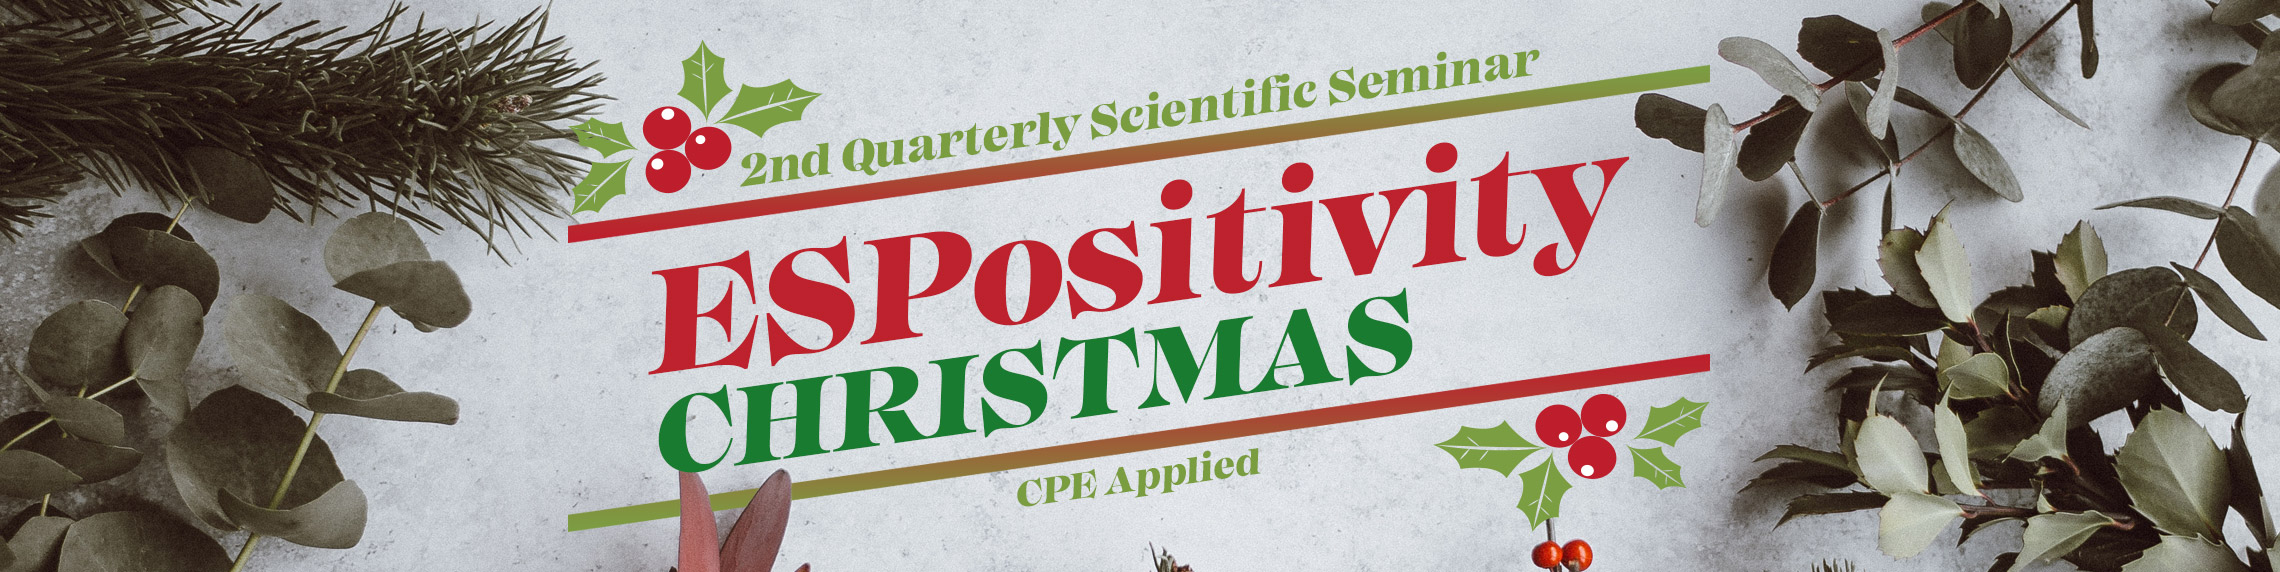 2nd ESP Quarterly Scientific Seminar 2018